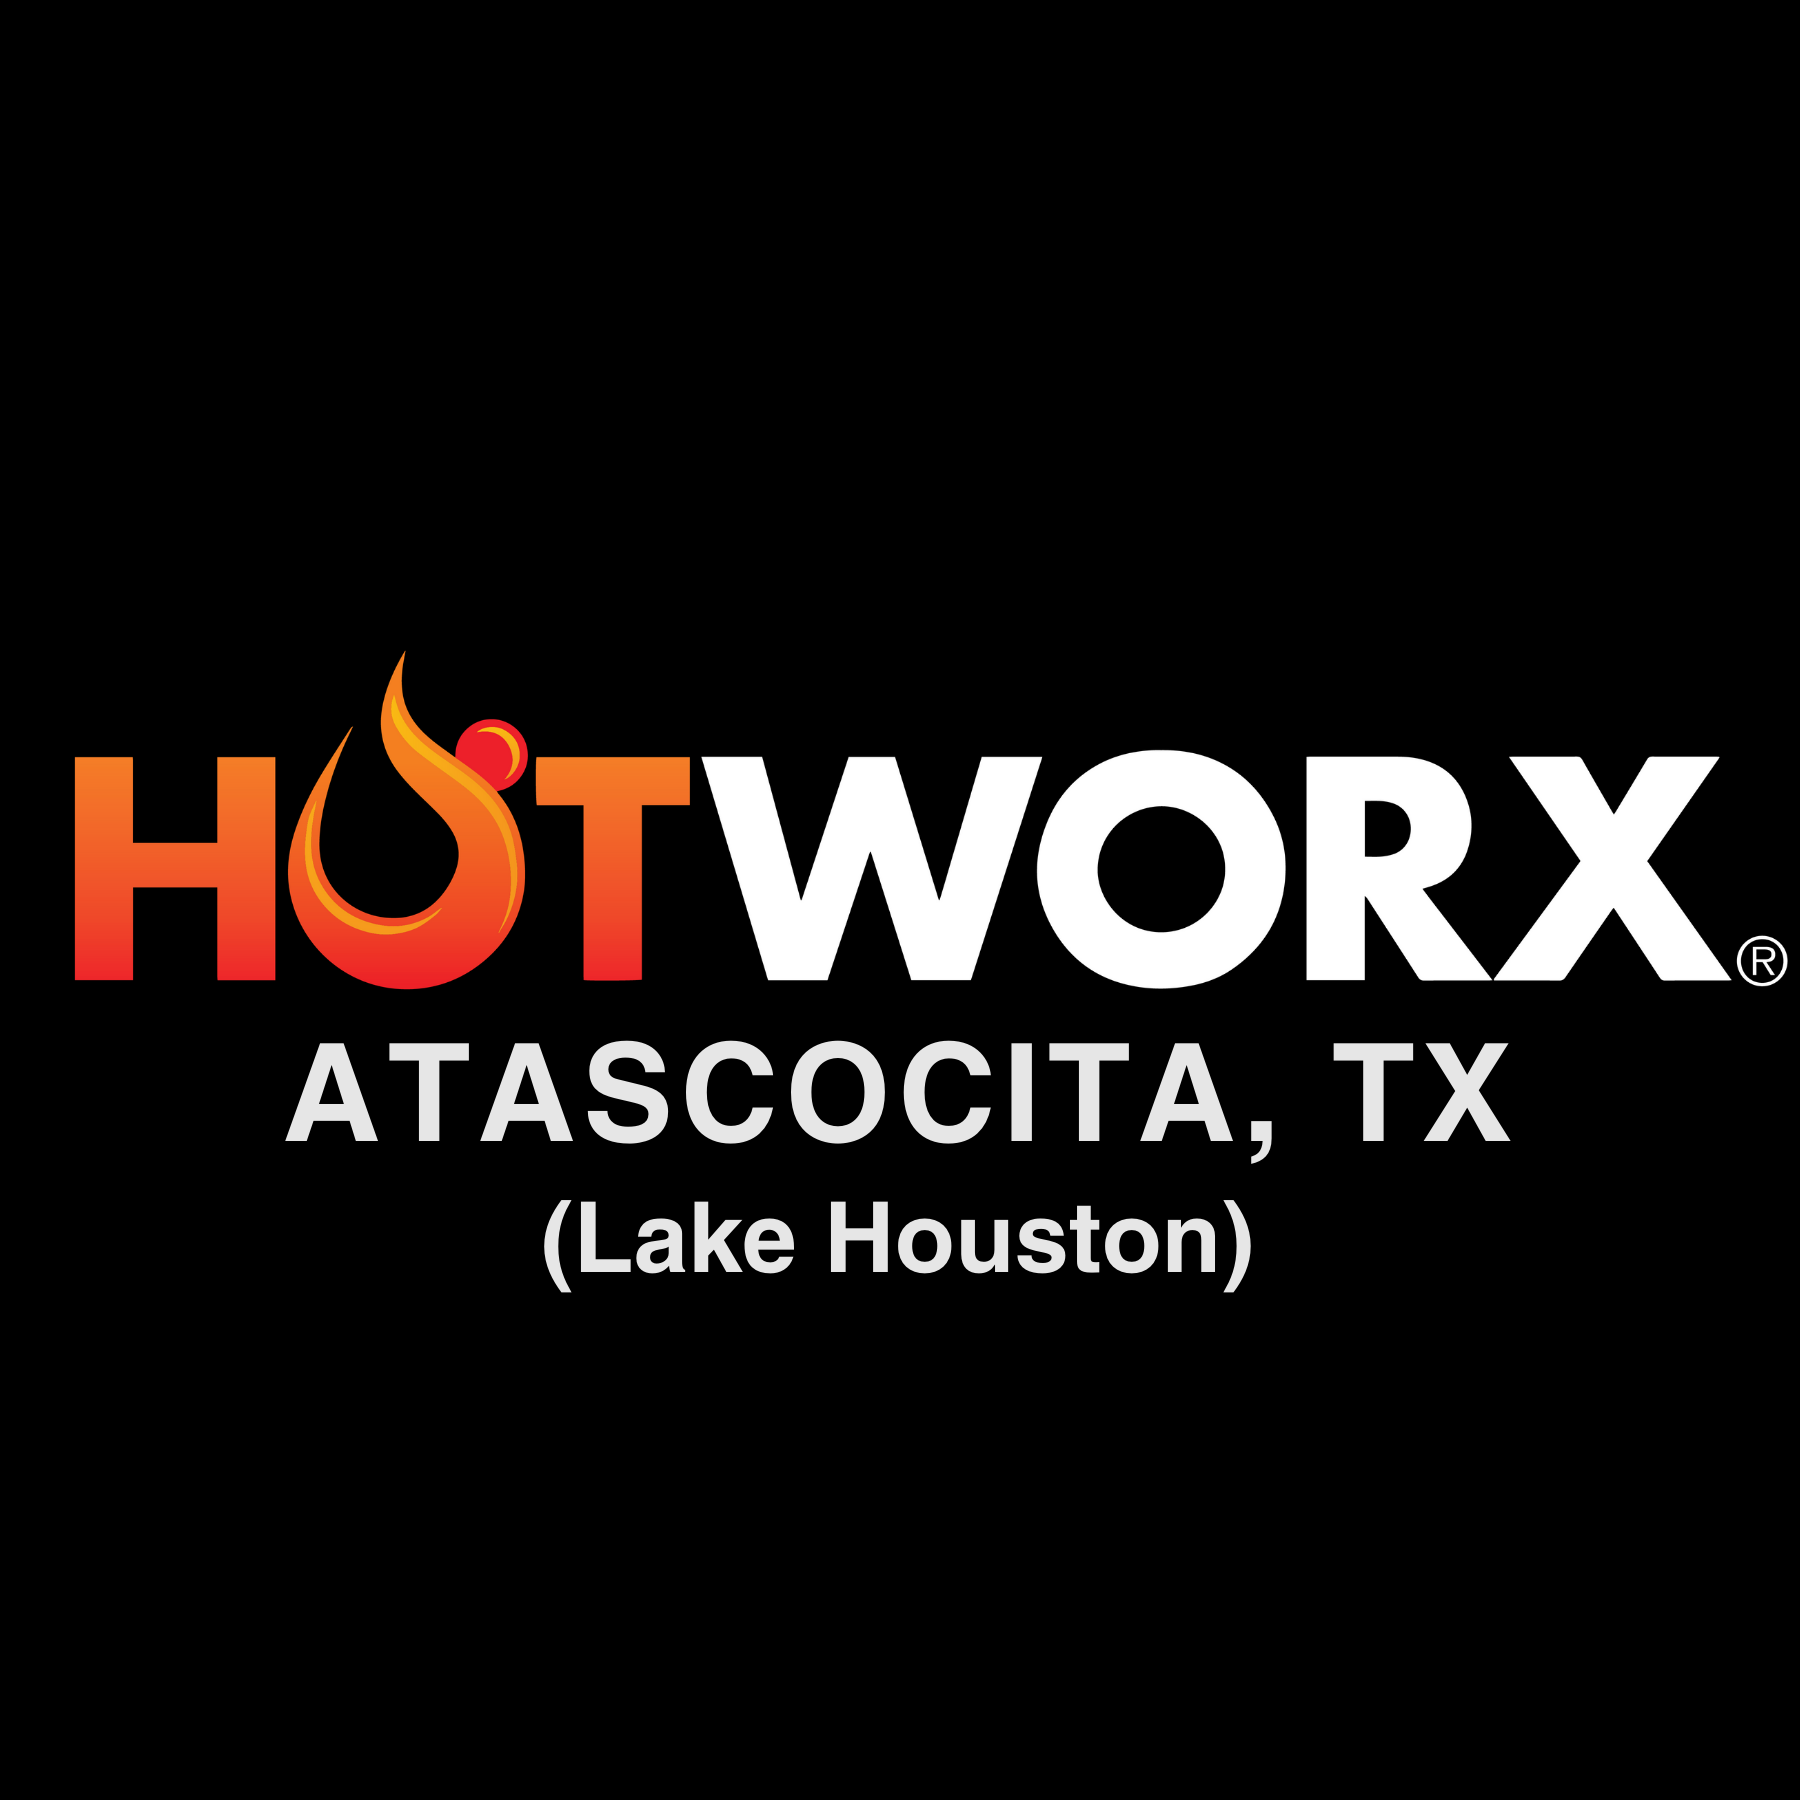 HOTWORX - Atascocita, TX (Lake Houston)'s Logo